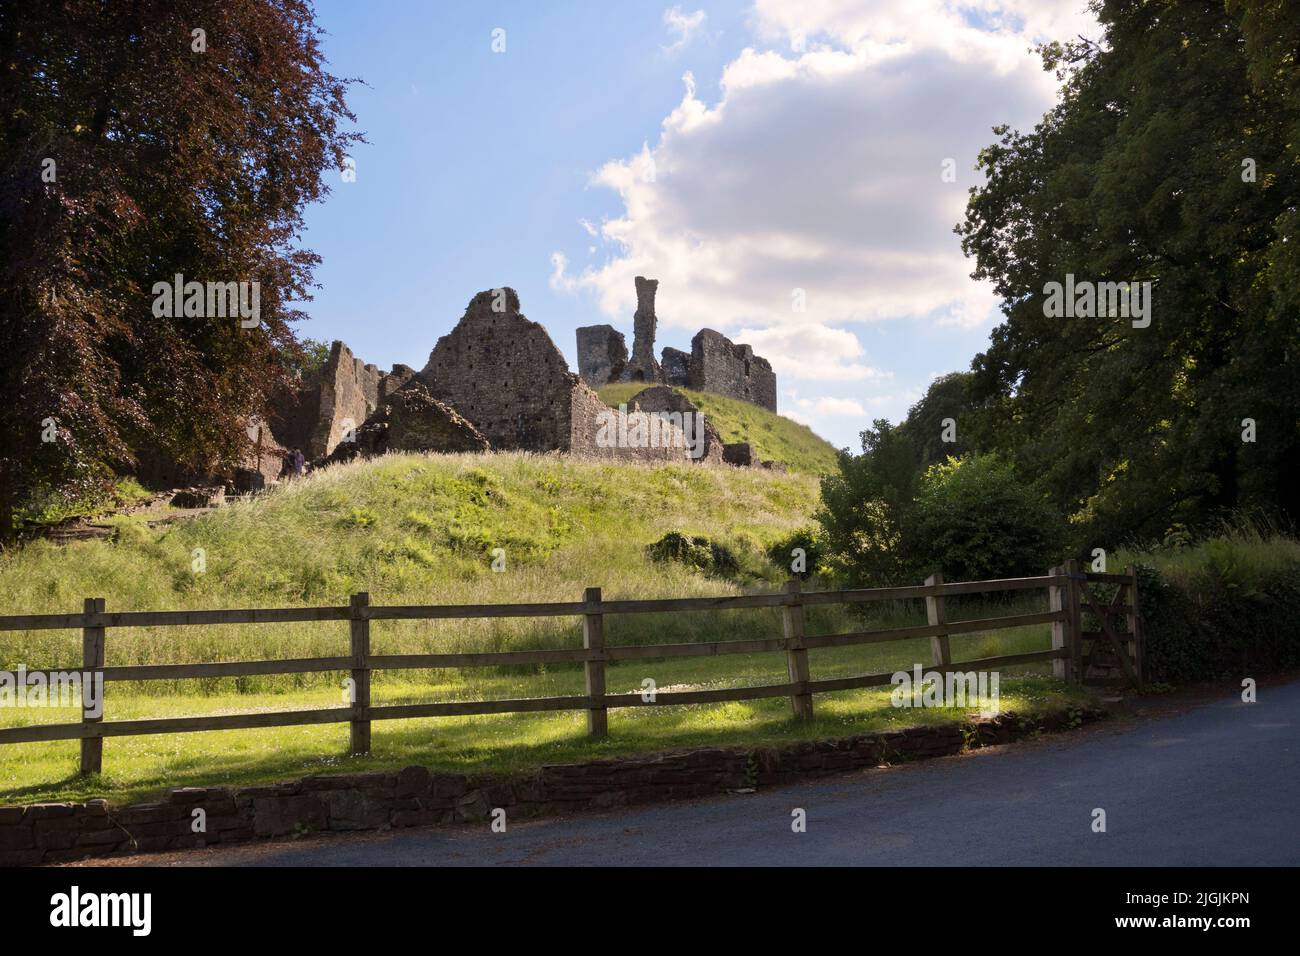 Castillo de Okehampton, Devon. El castillo más grande de Devon, comenzó como una motte y bailey después de la conquista normanda. Foto de stock